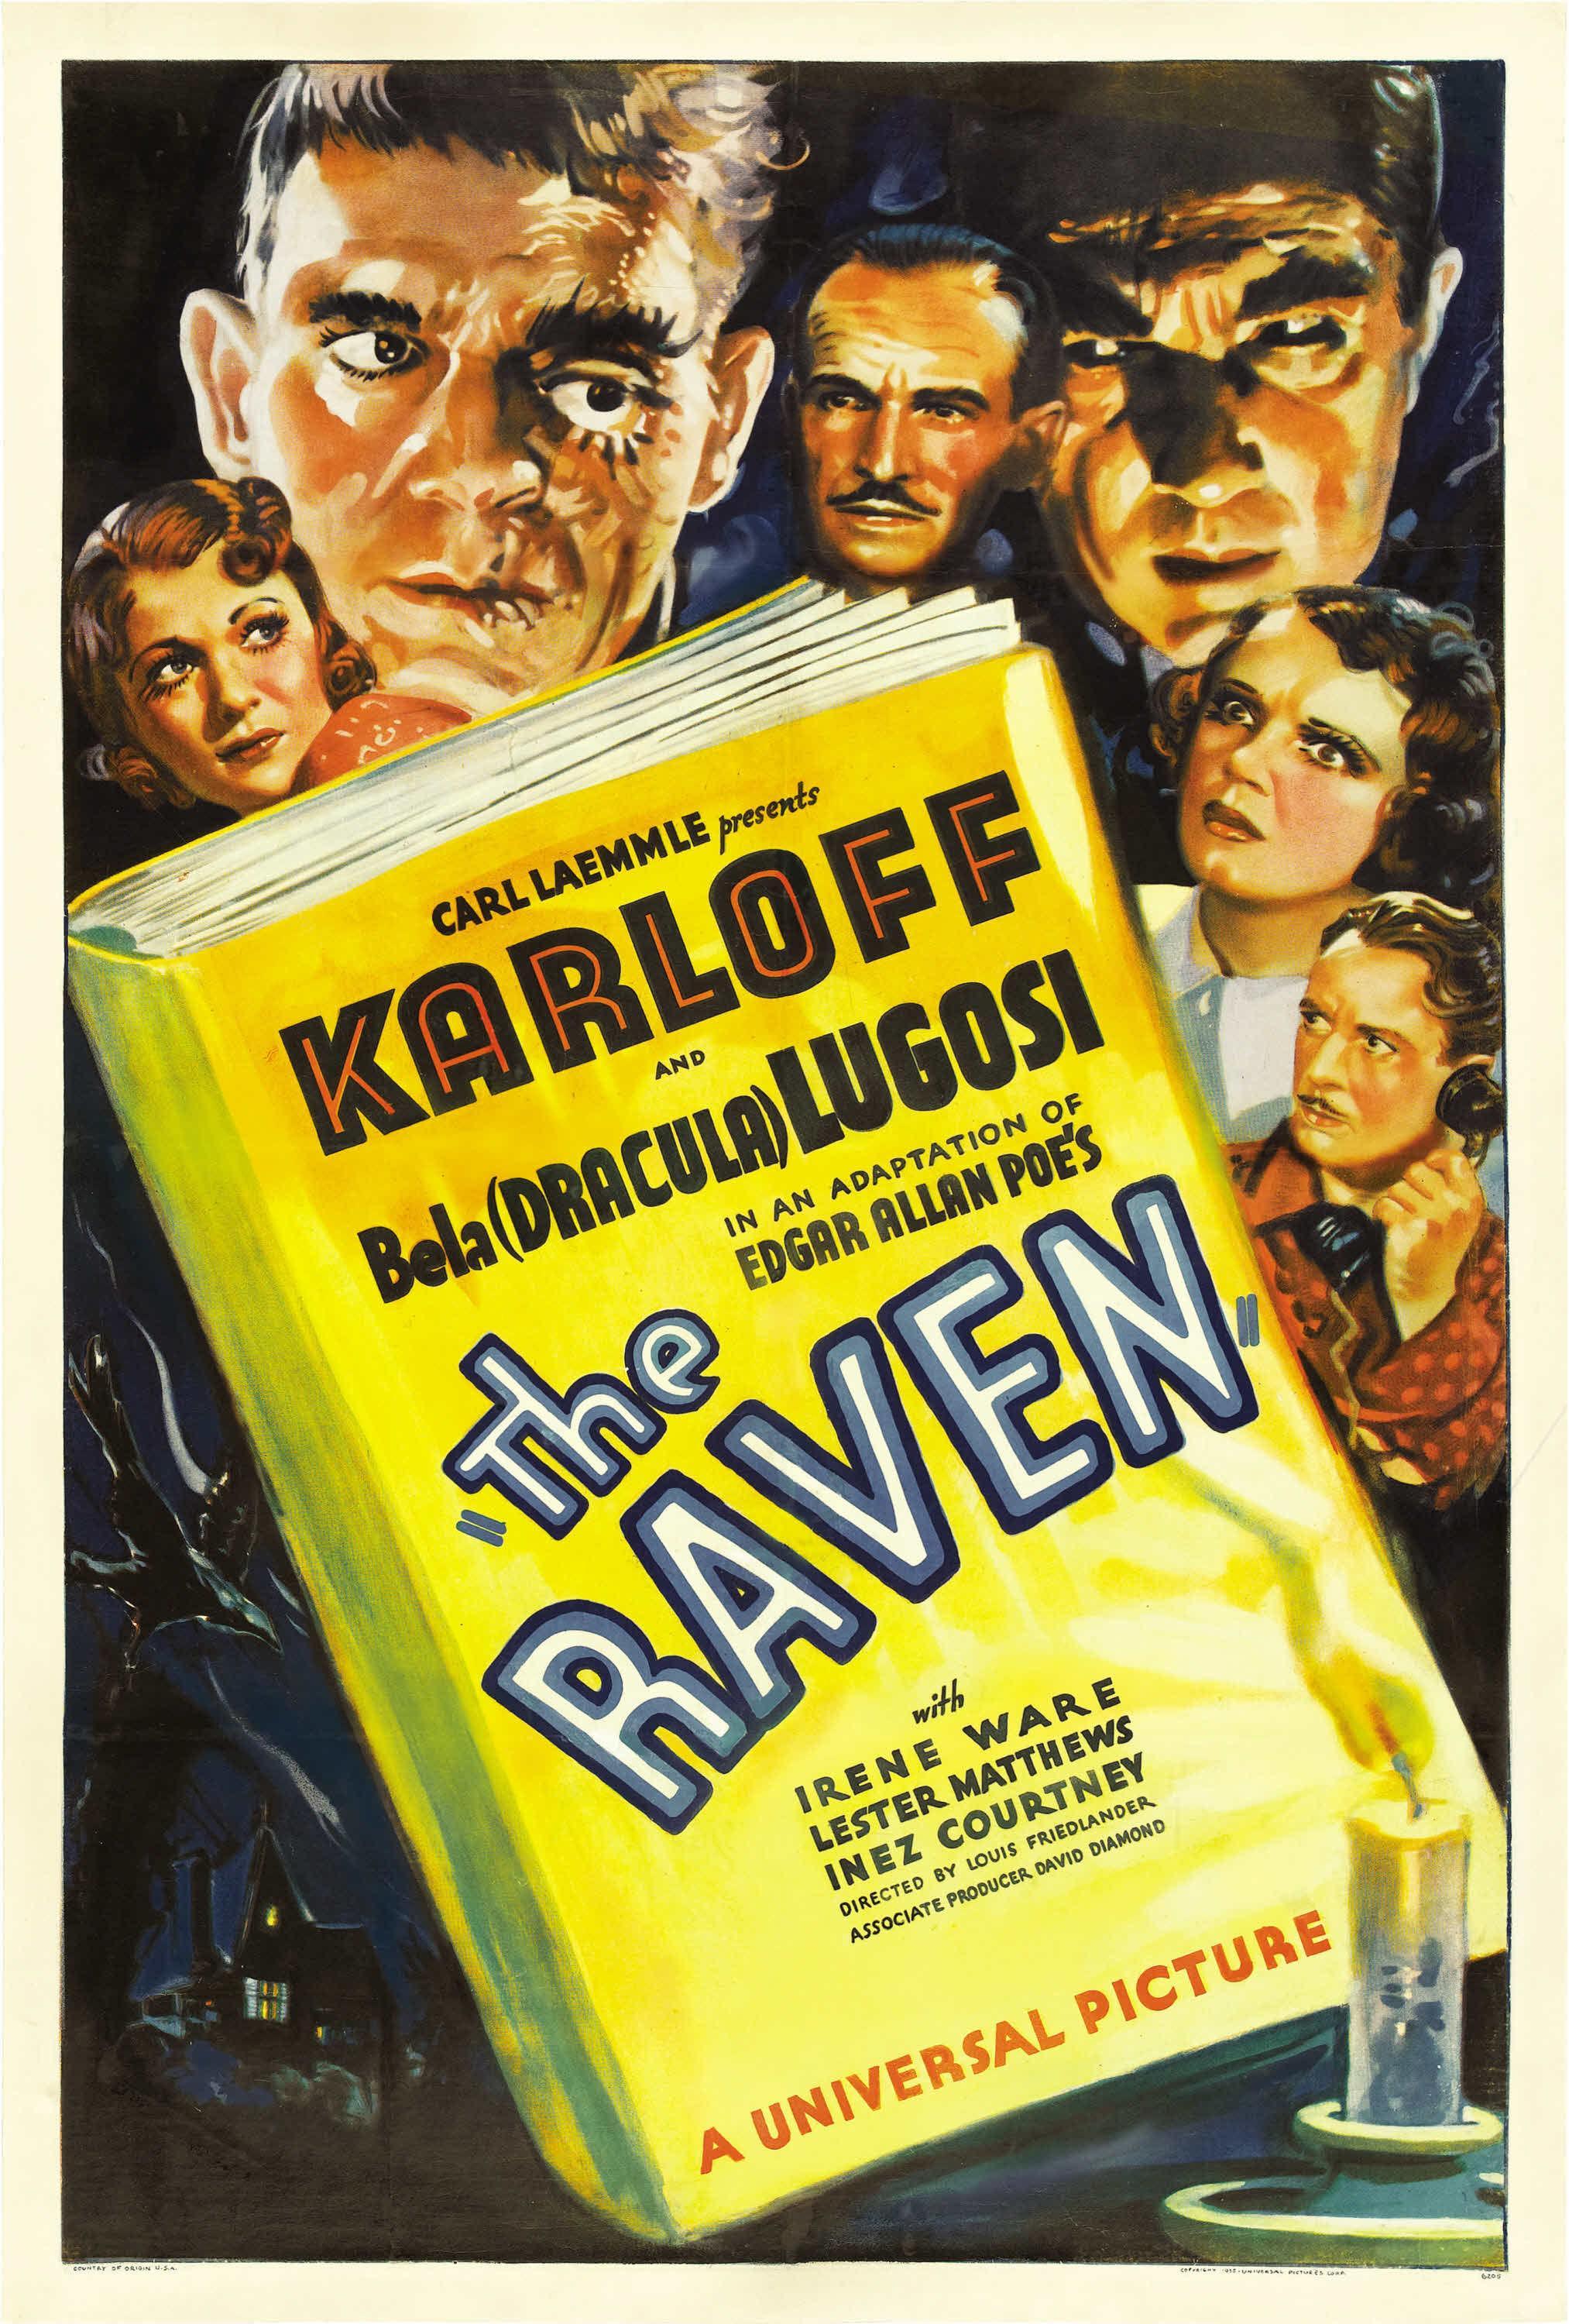 Постер фильма Ворон | Raven